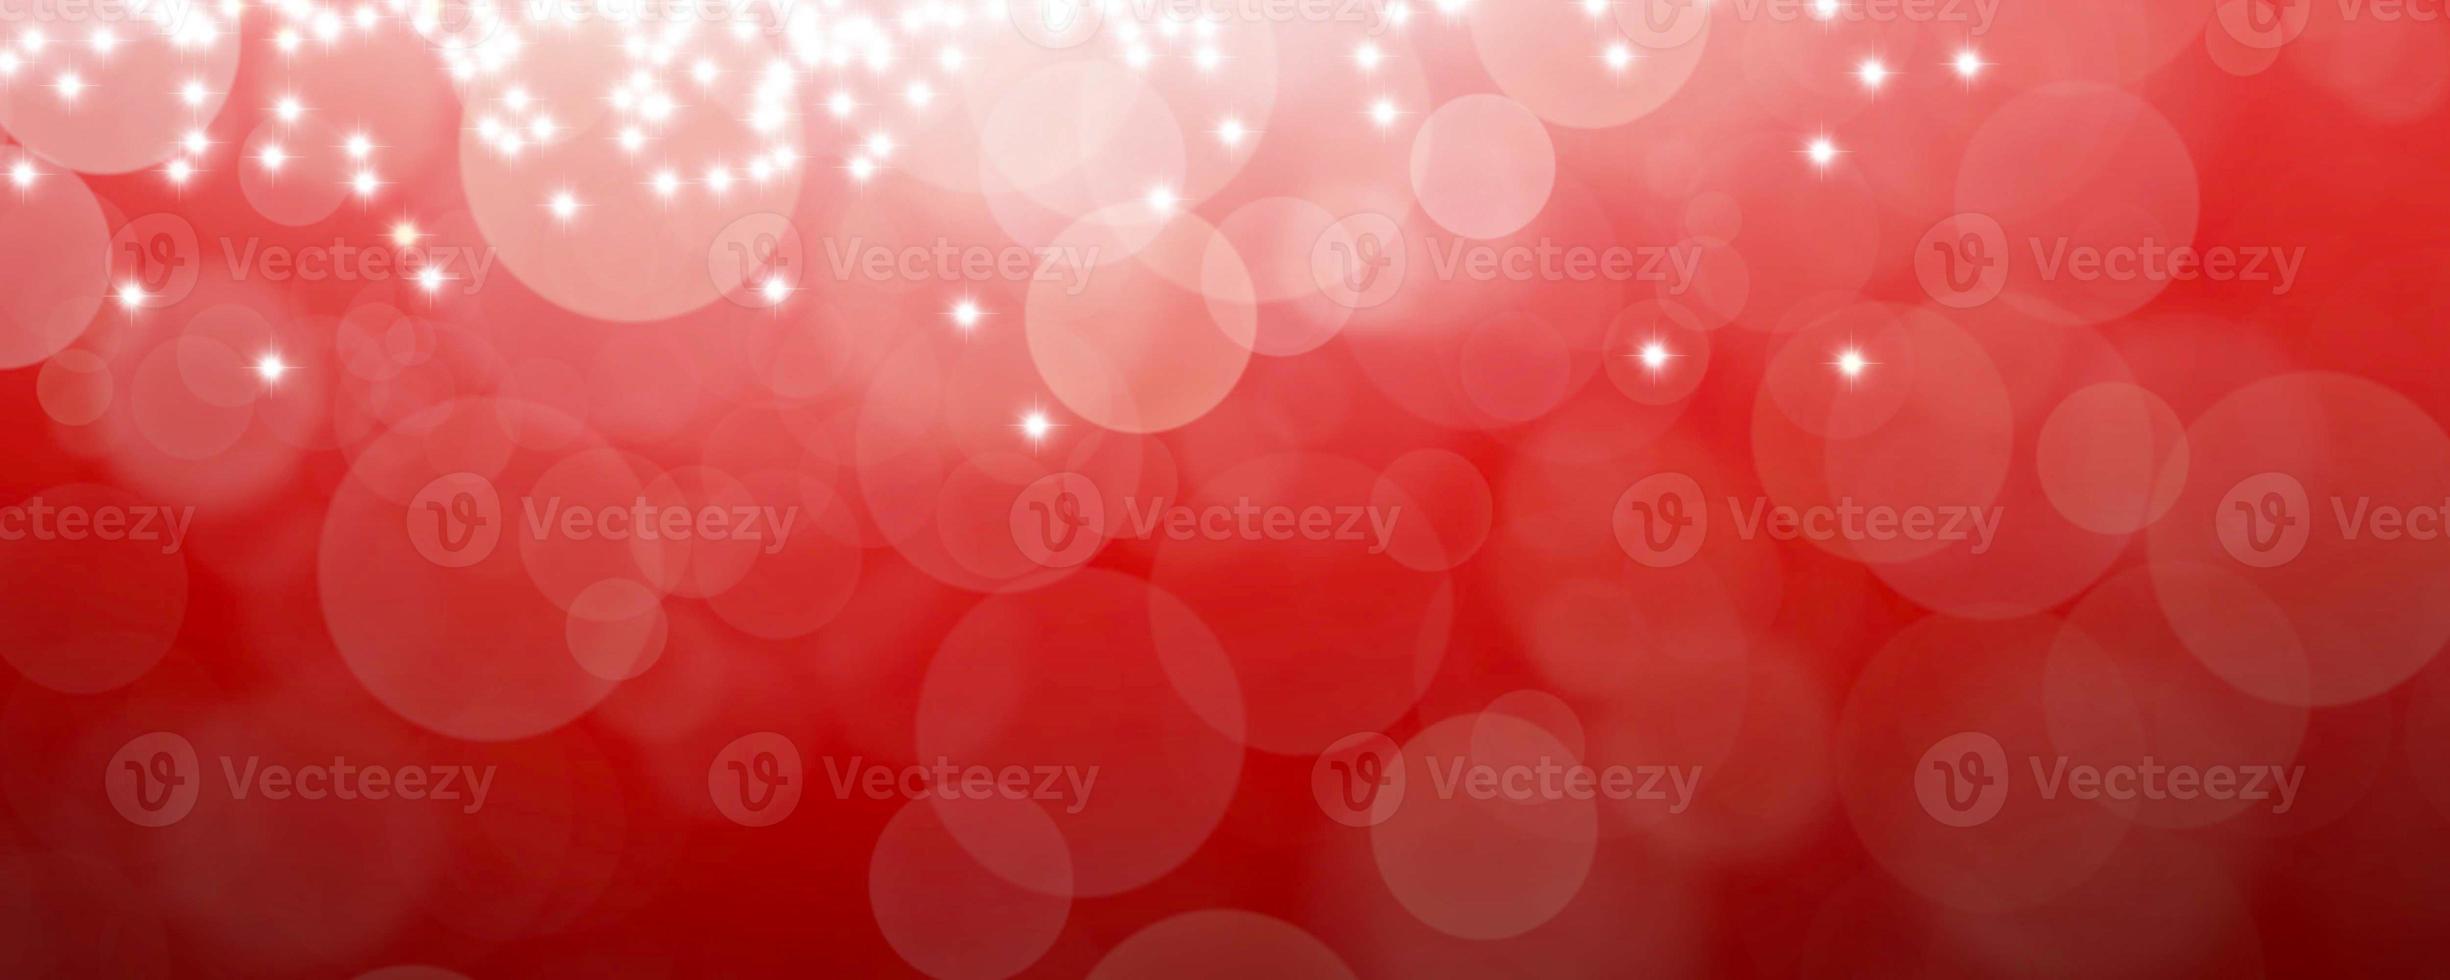 astratto sfondo rosso con bokeh leggero e sfondo estivo foto